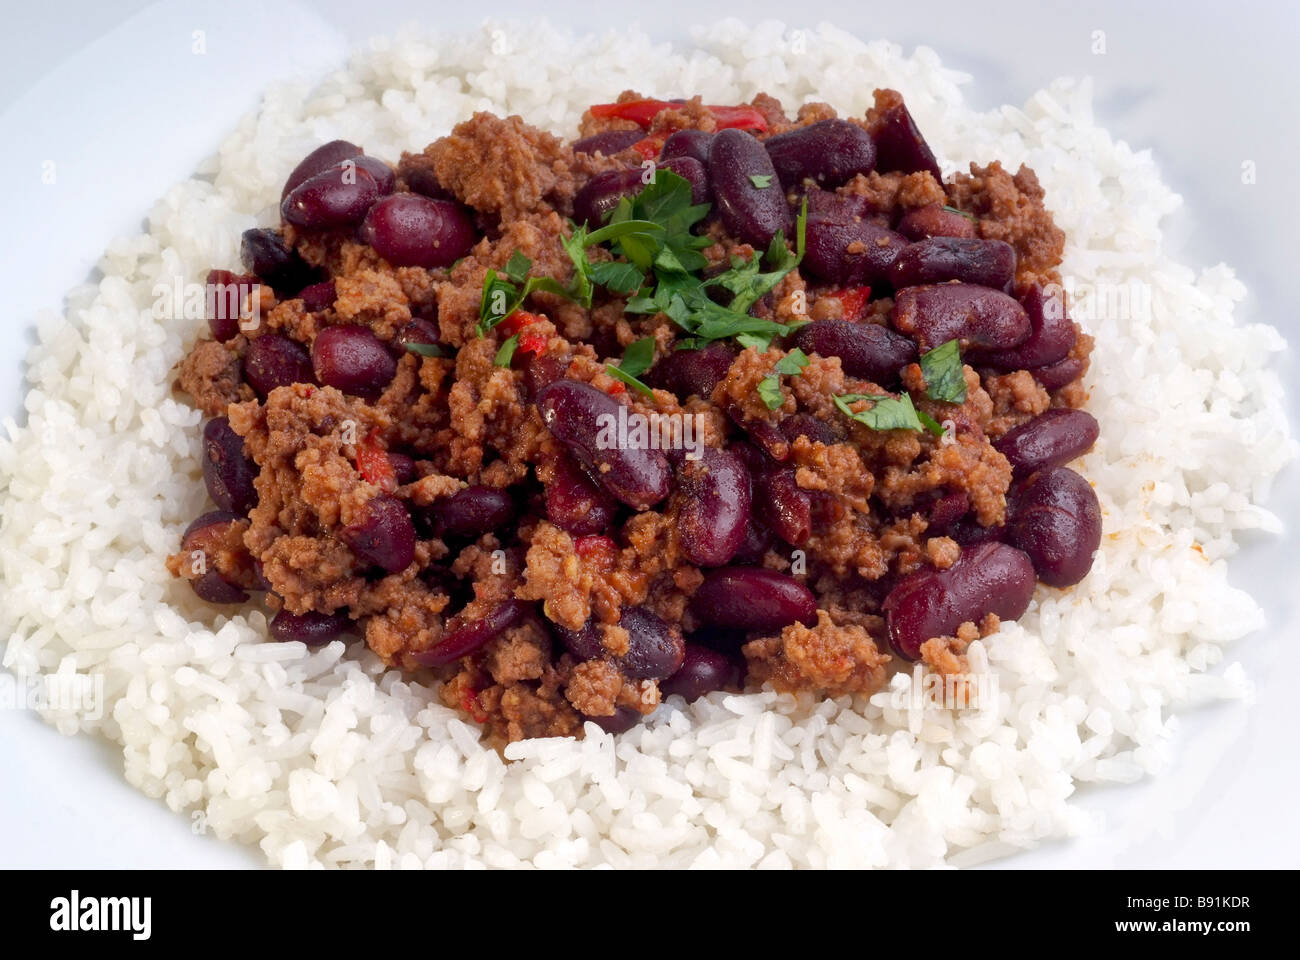 Assiette de chili con carne la viande hachée aux haricots et riz blanc Banque D'Images